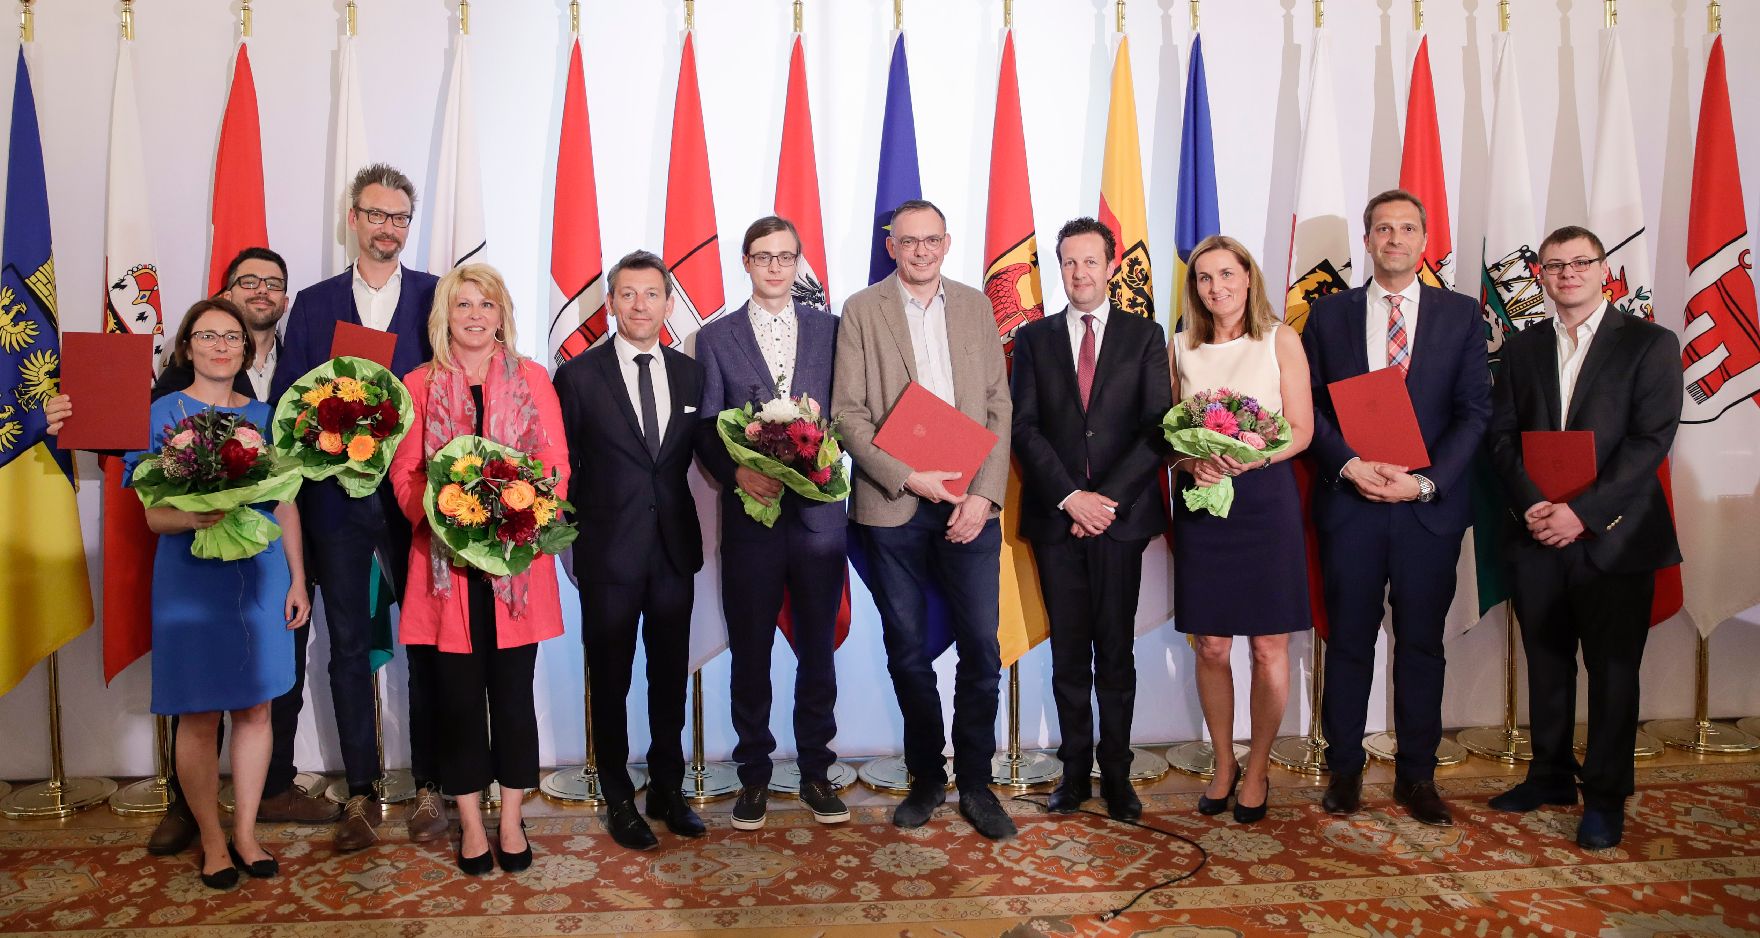 Am 25. April 2018 fand die Überreichung des Österreichischen Buchhandlungspreises im Bundeskanzleramt statt.